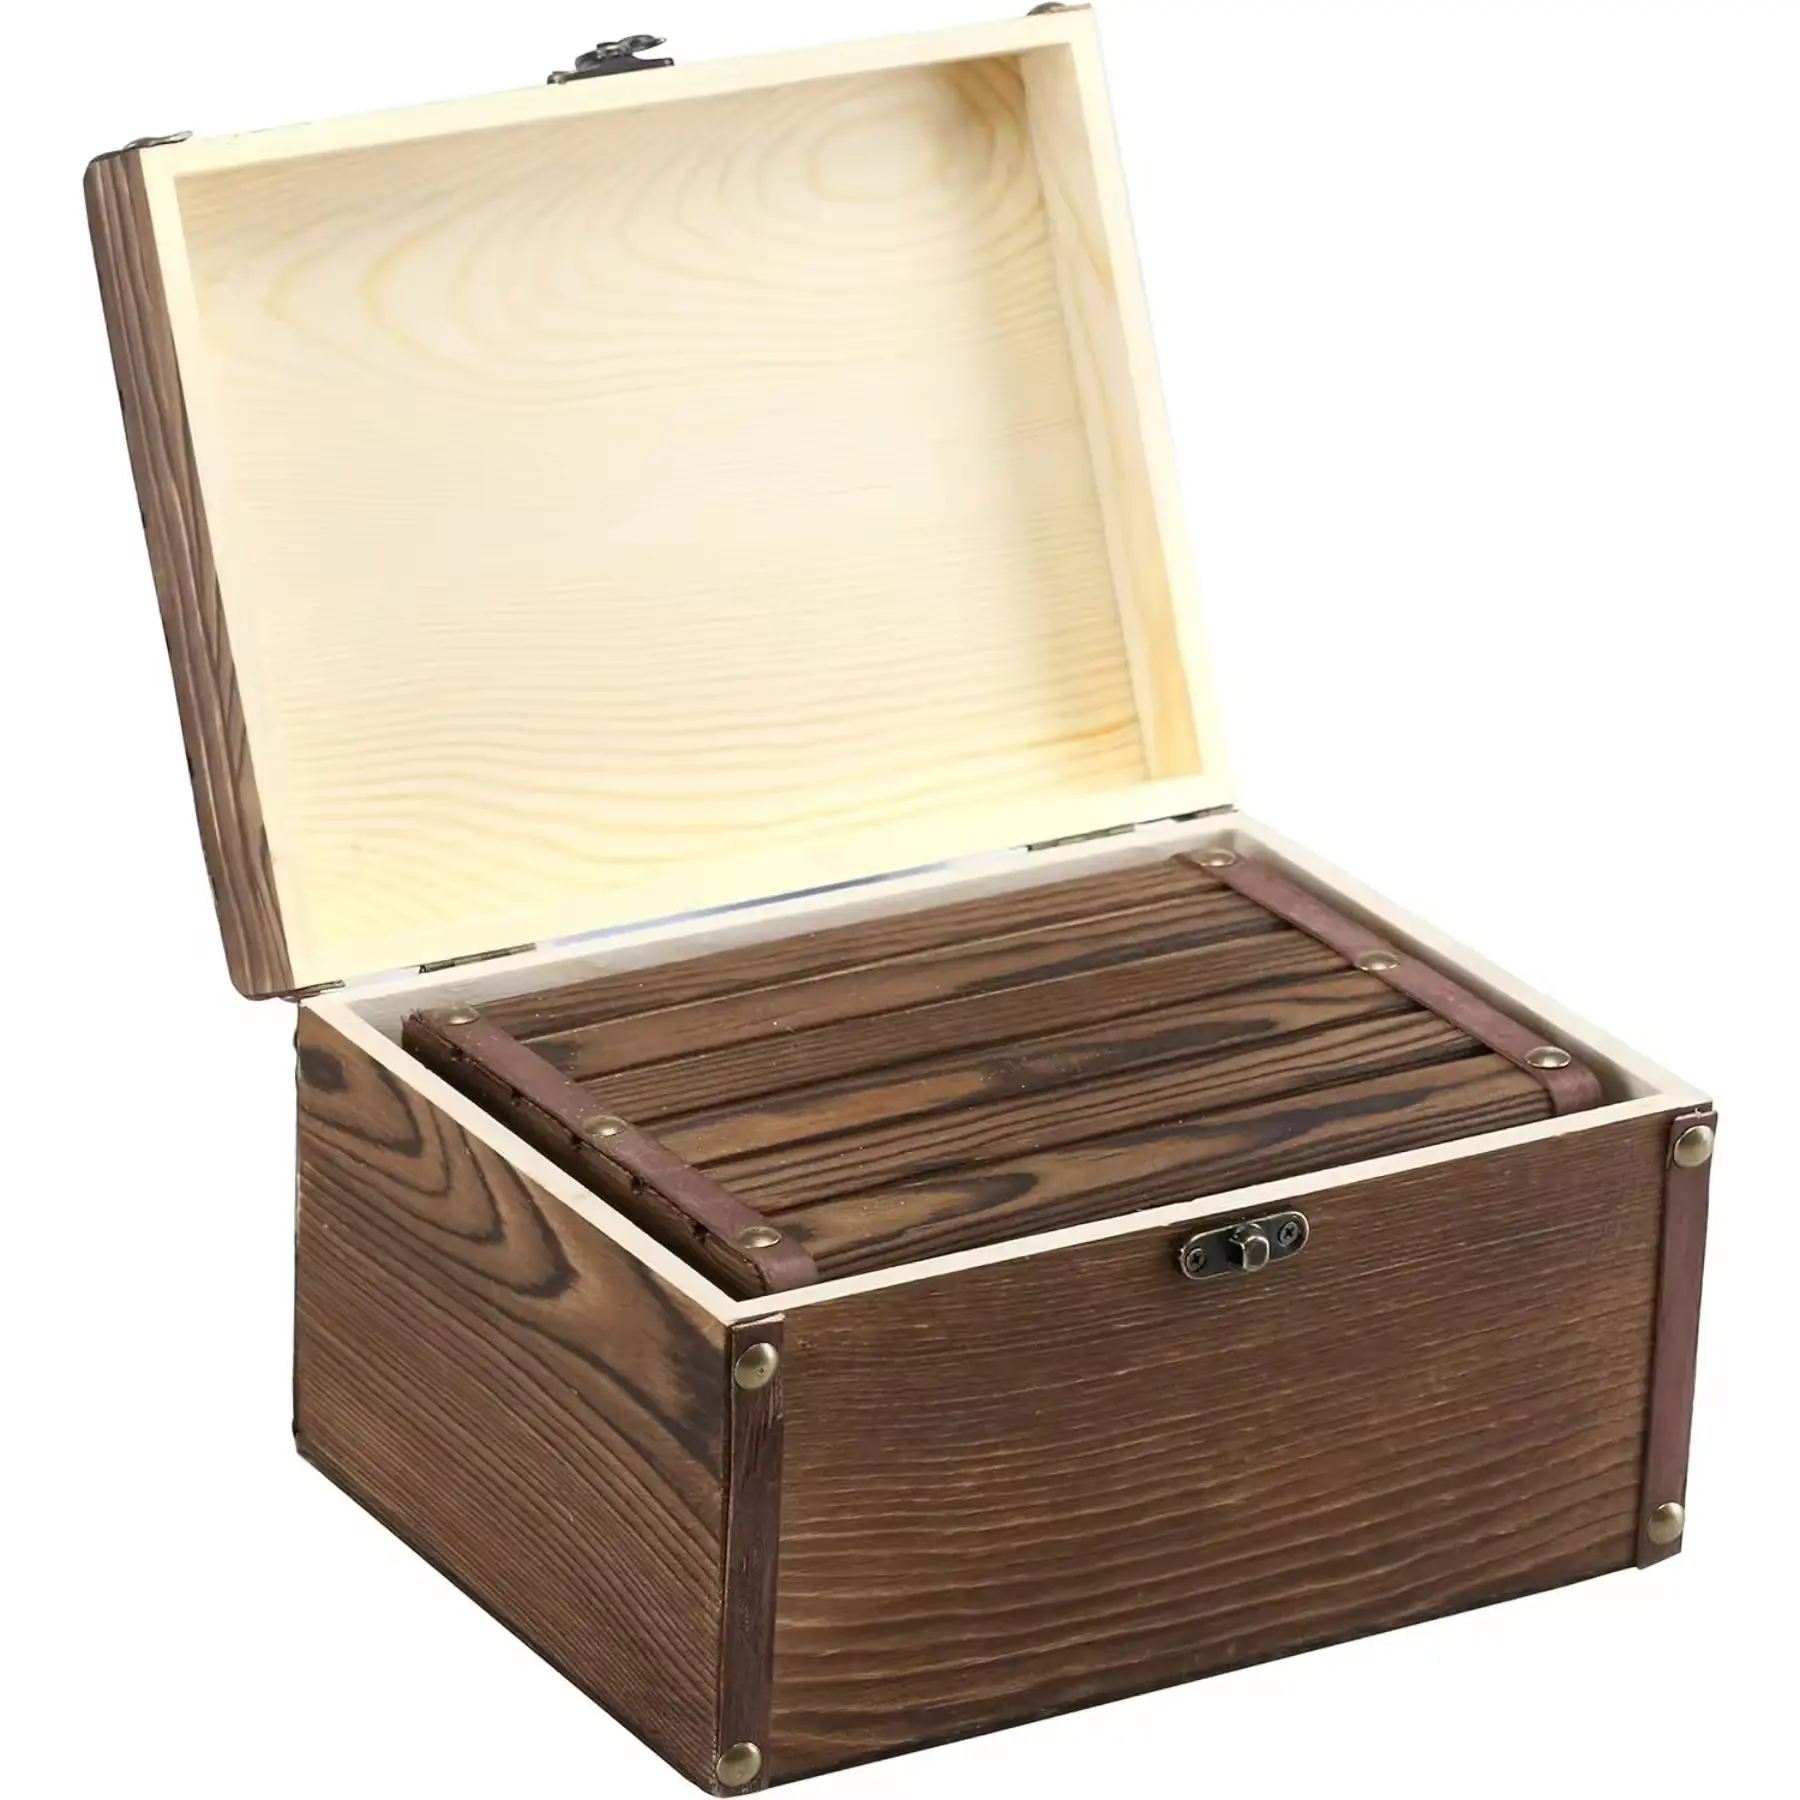 Caixas de armazenamento decorativas de madeira marrom rústica de alta qualidade, joias e bugigangas, baús de madeira com trava